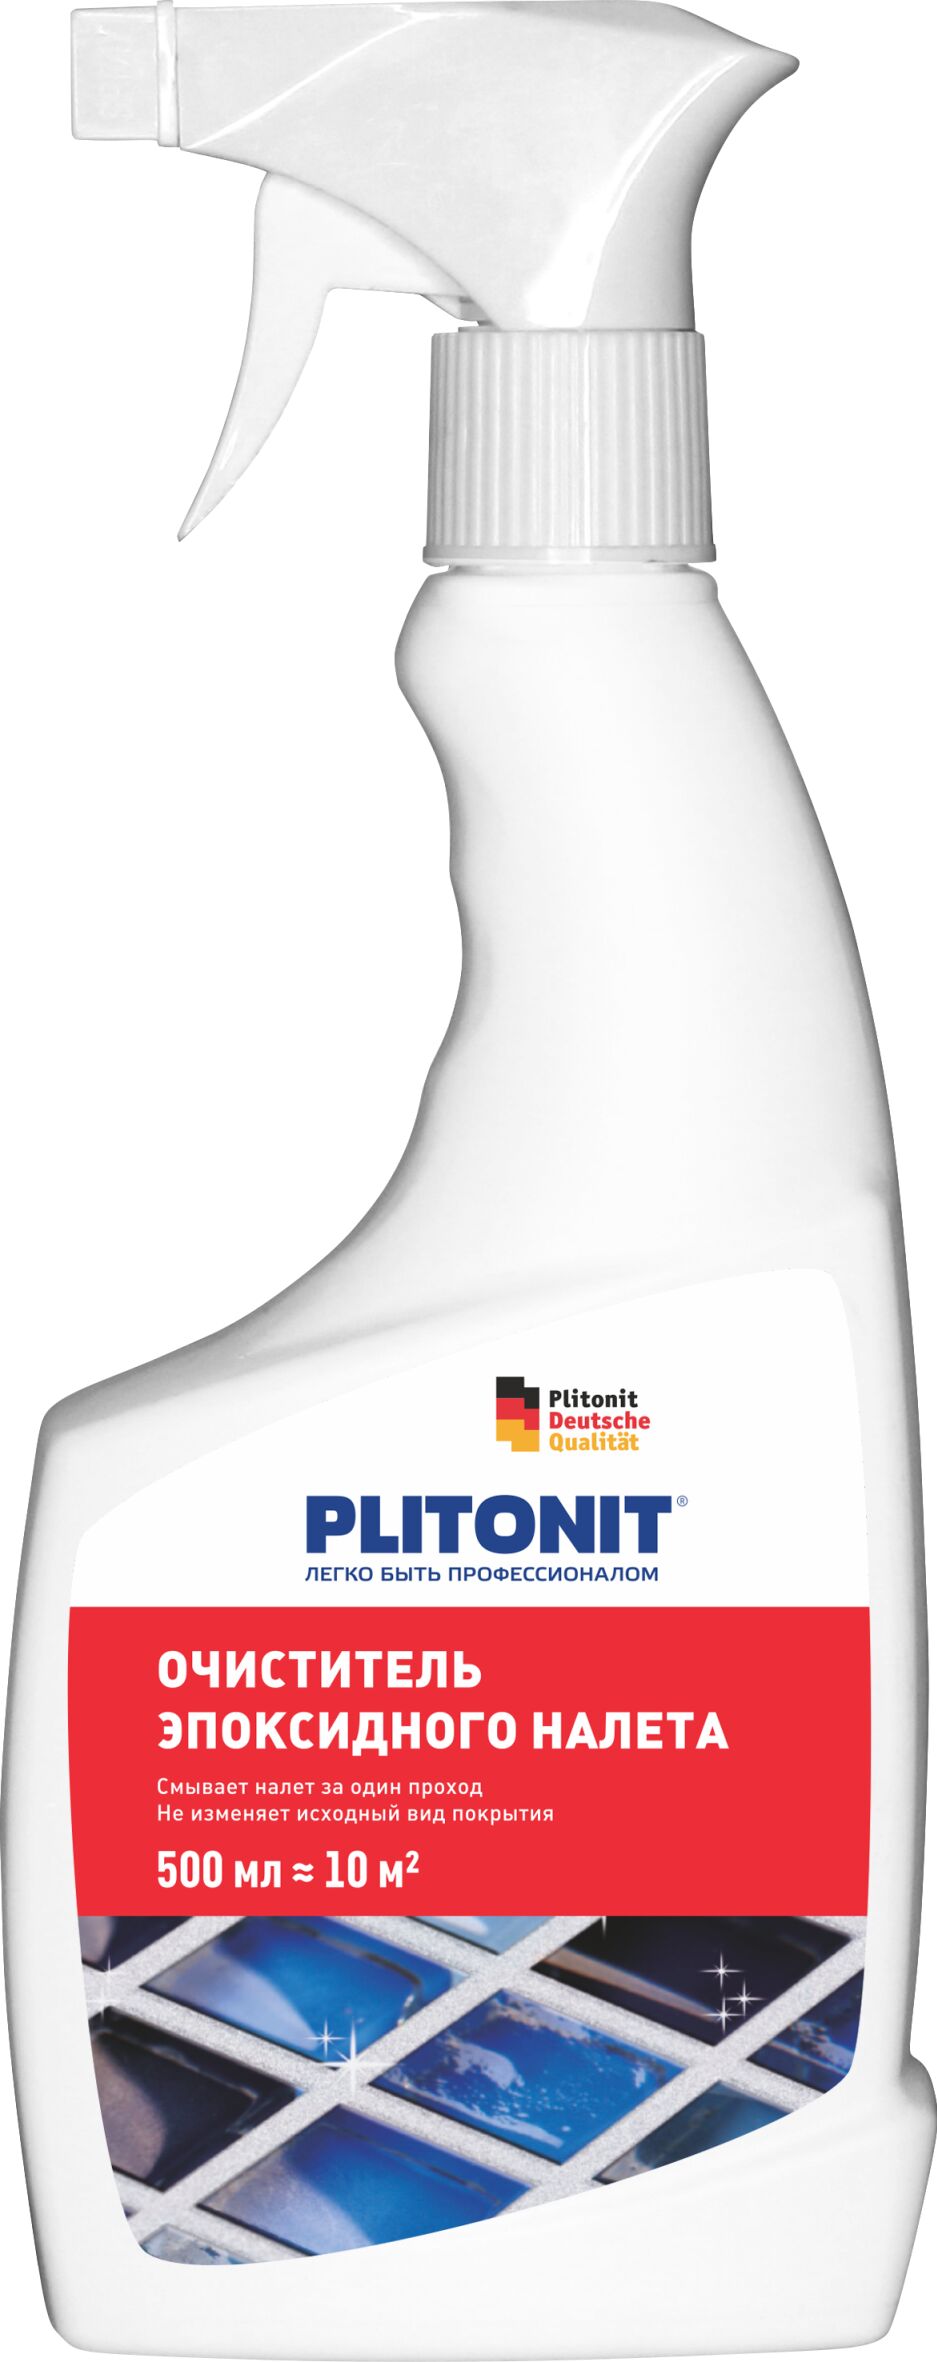 PLITONIT Очиститель эпоксидного налета - 0,5л